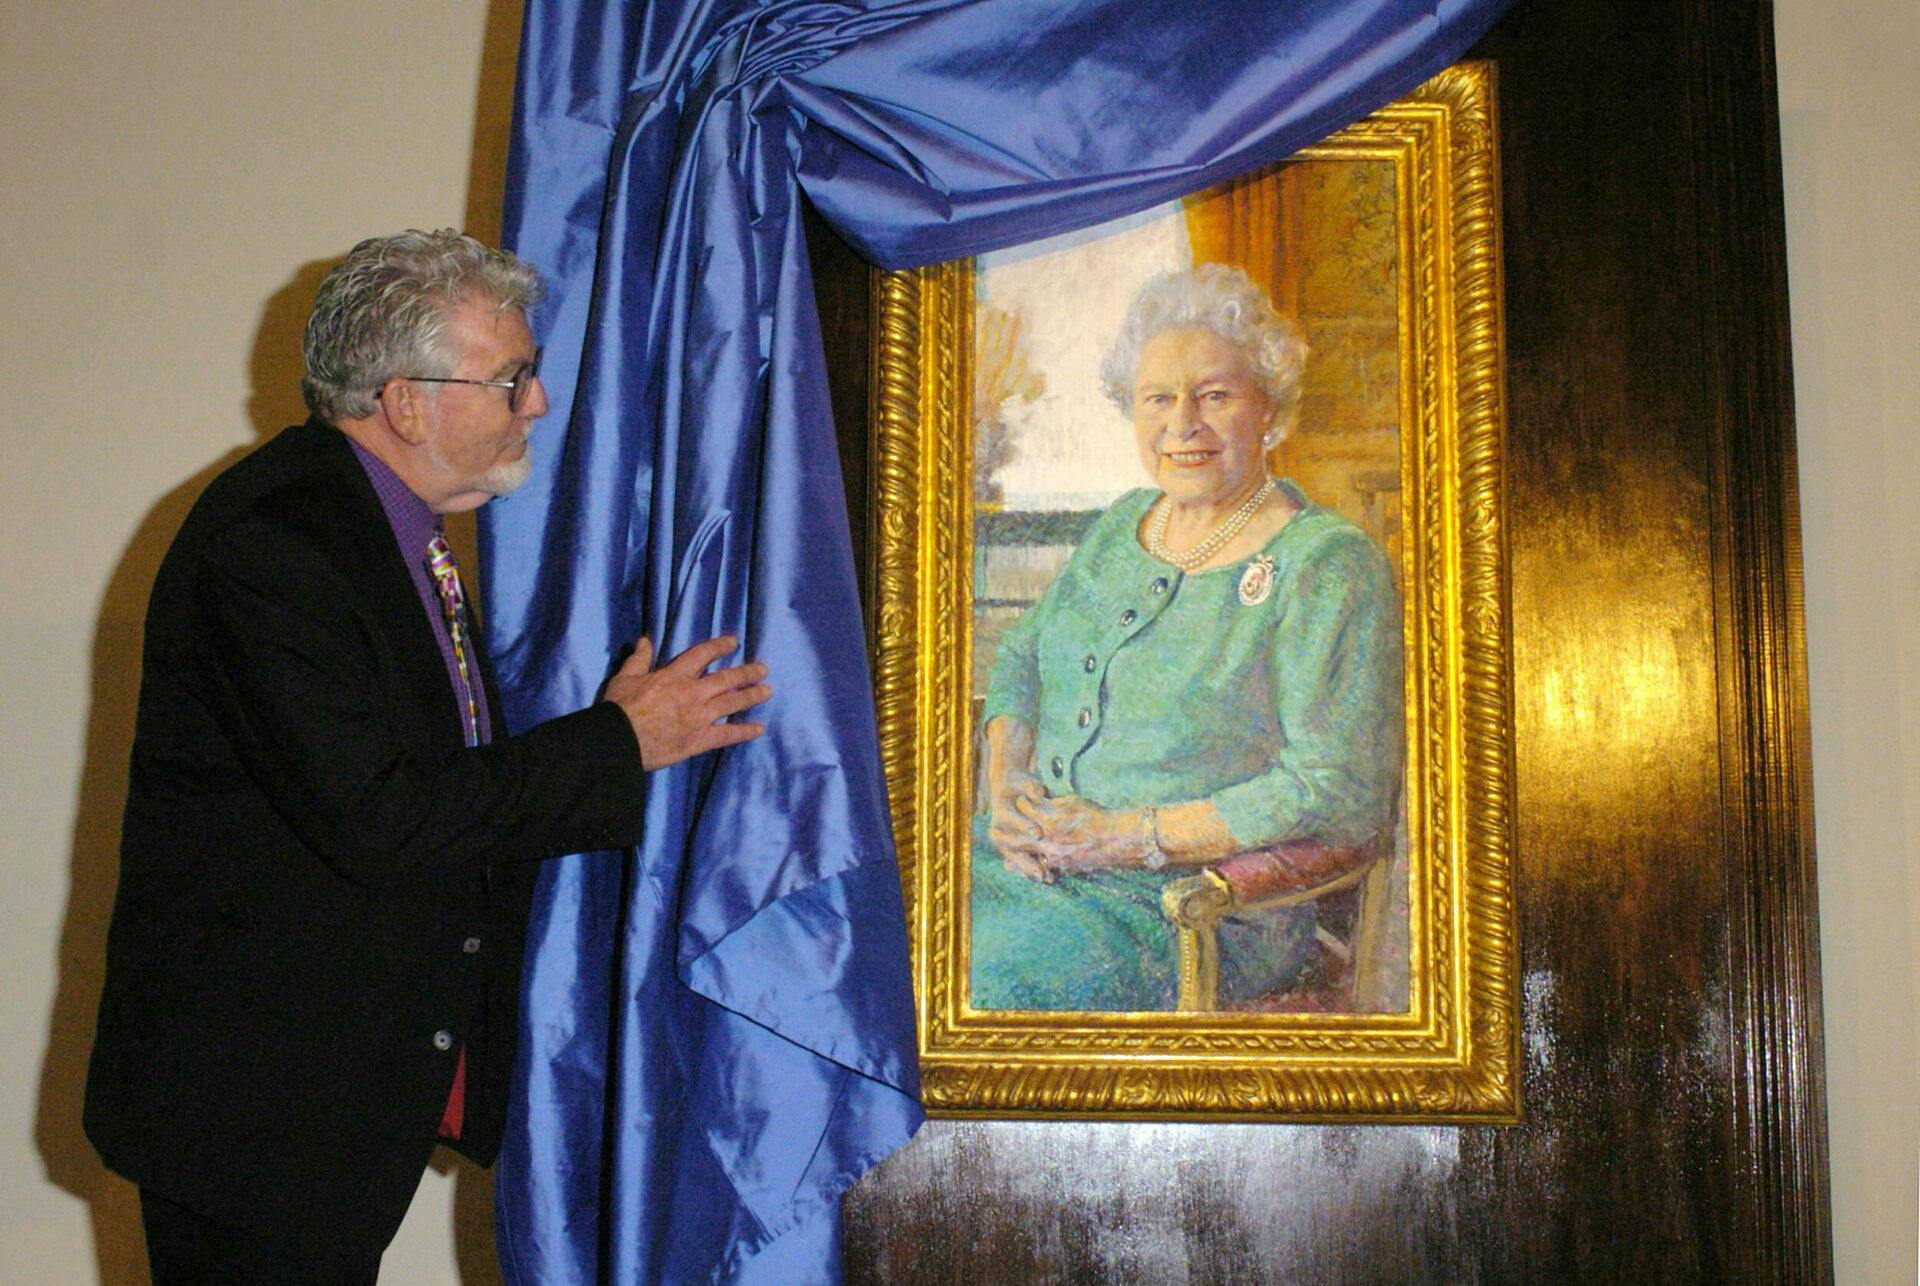 I 2006 blev dronning Elizabeth II 80 år, og her fik Rolf Harris æren af at male et portræt.